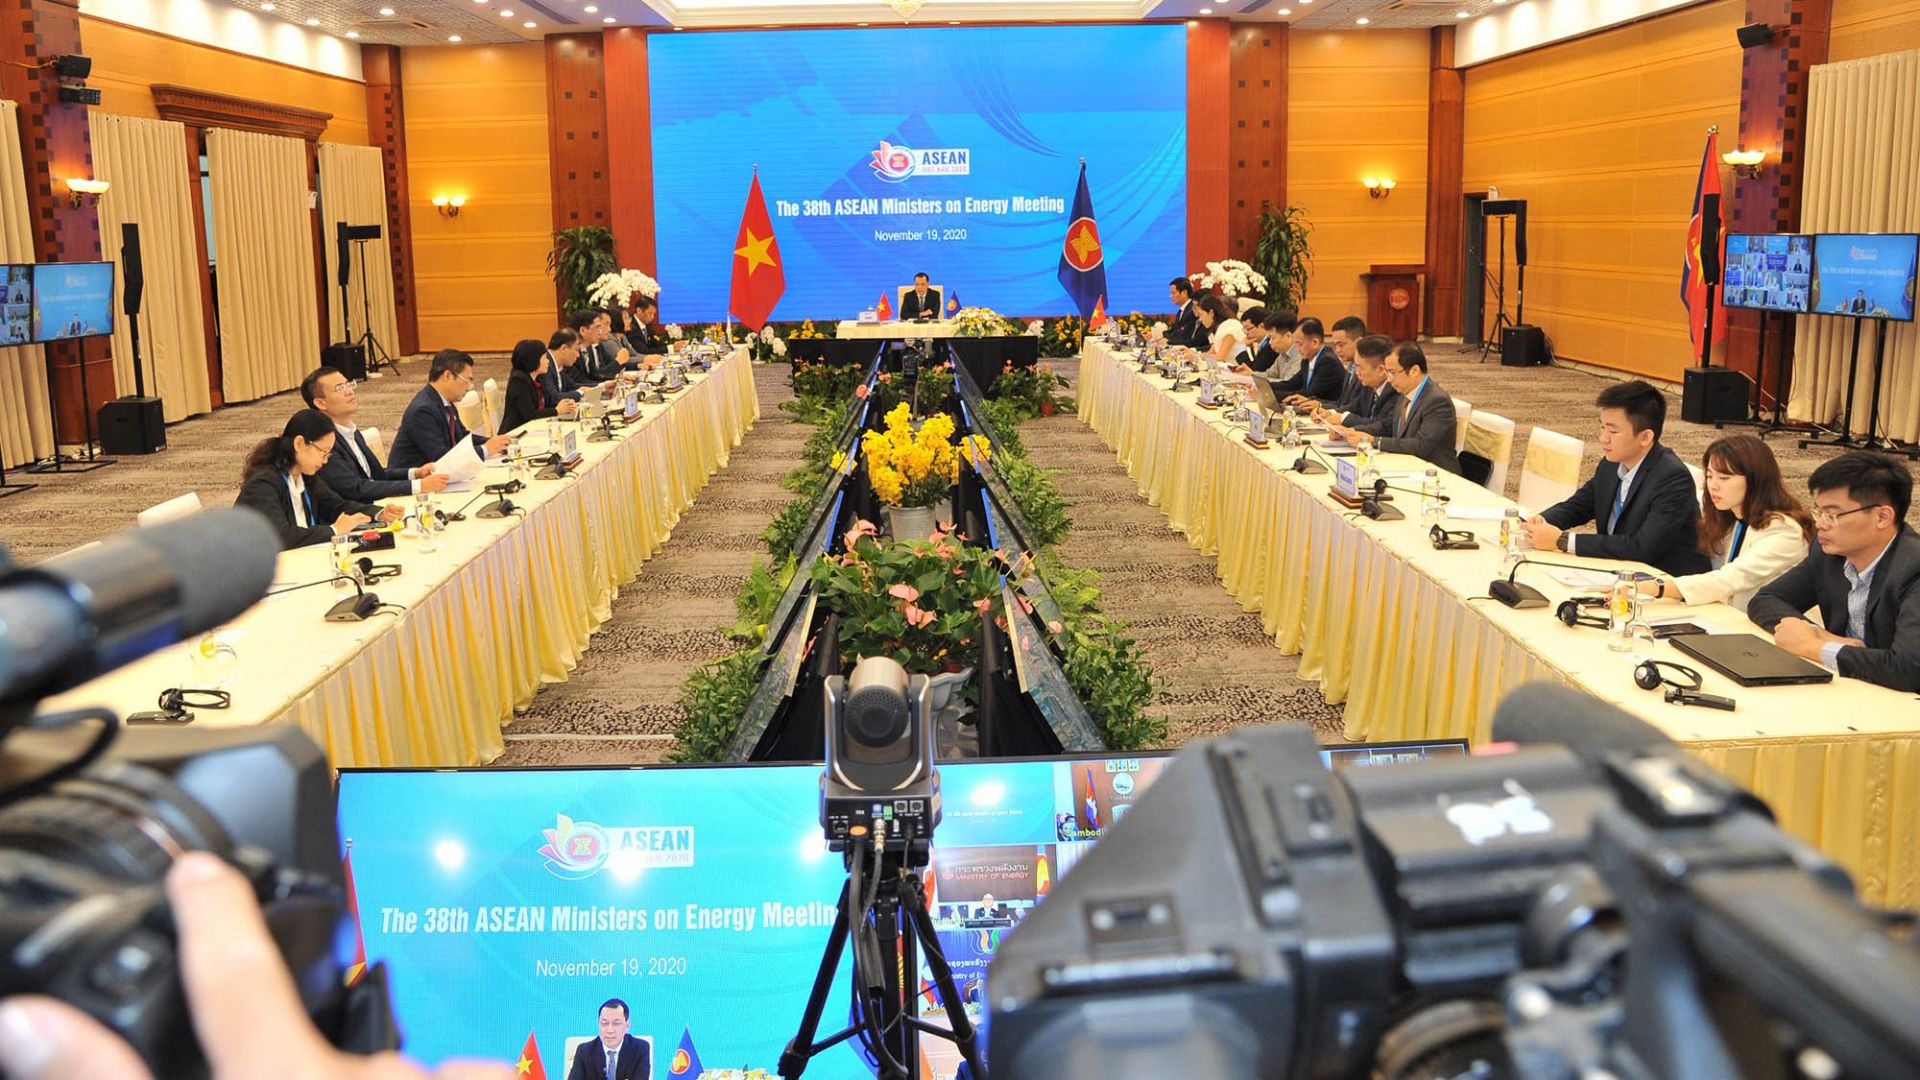 Hội nghị Bộ trưởng Năng lượng ASEAN lần thứ 38